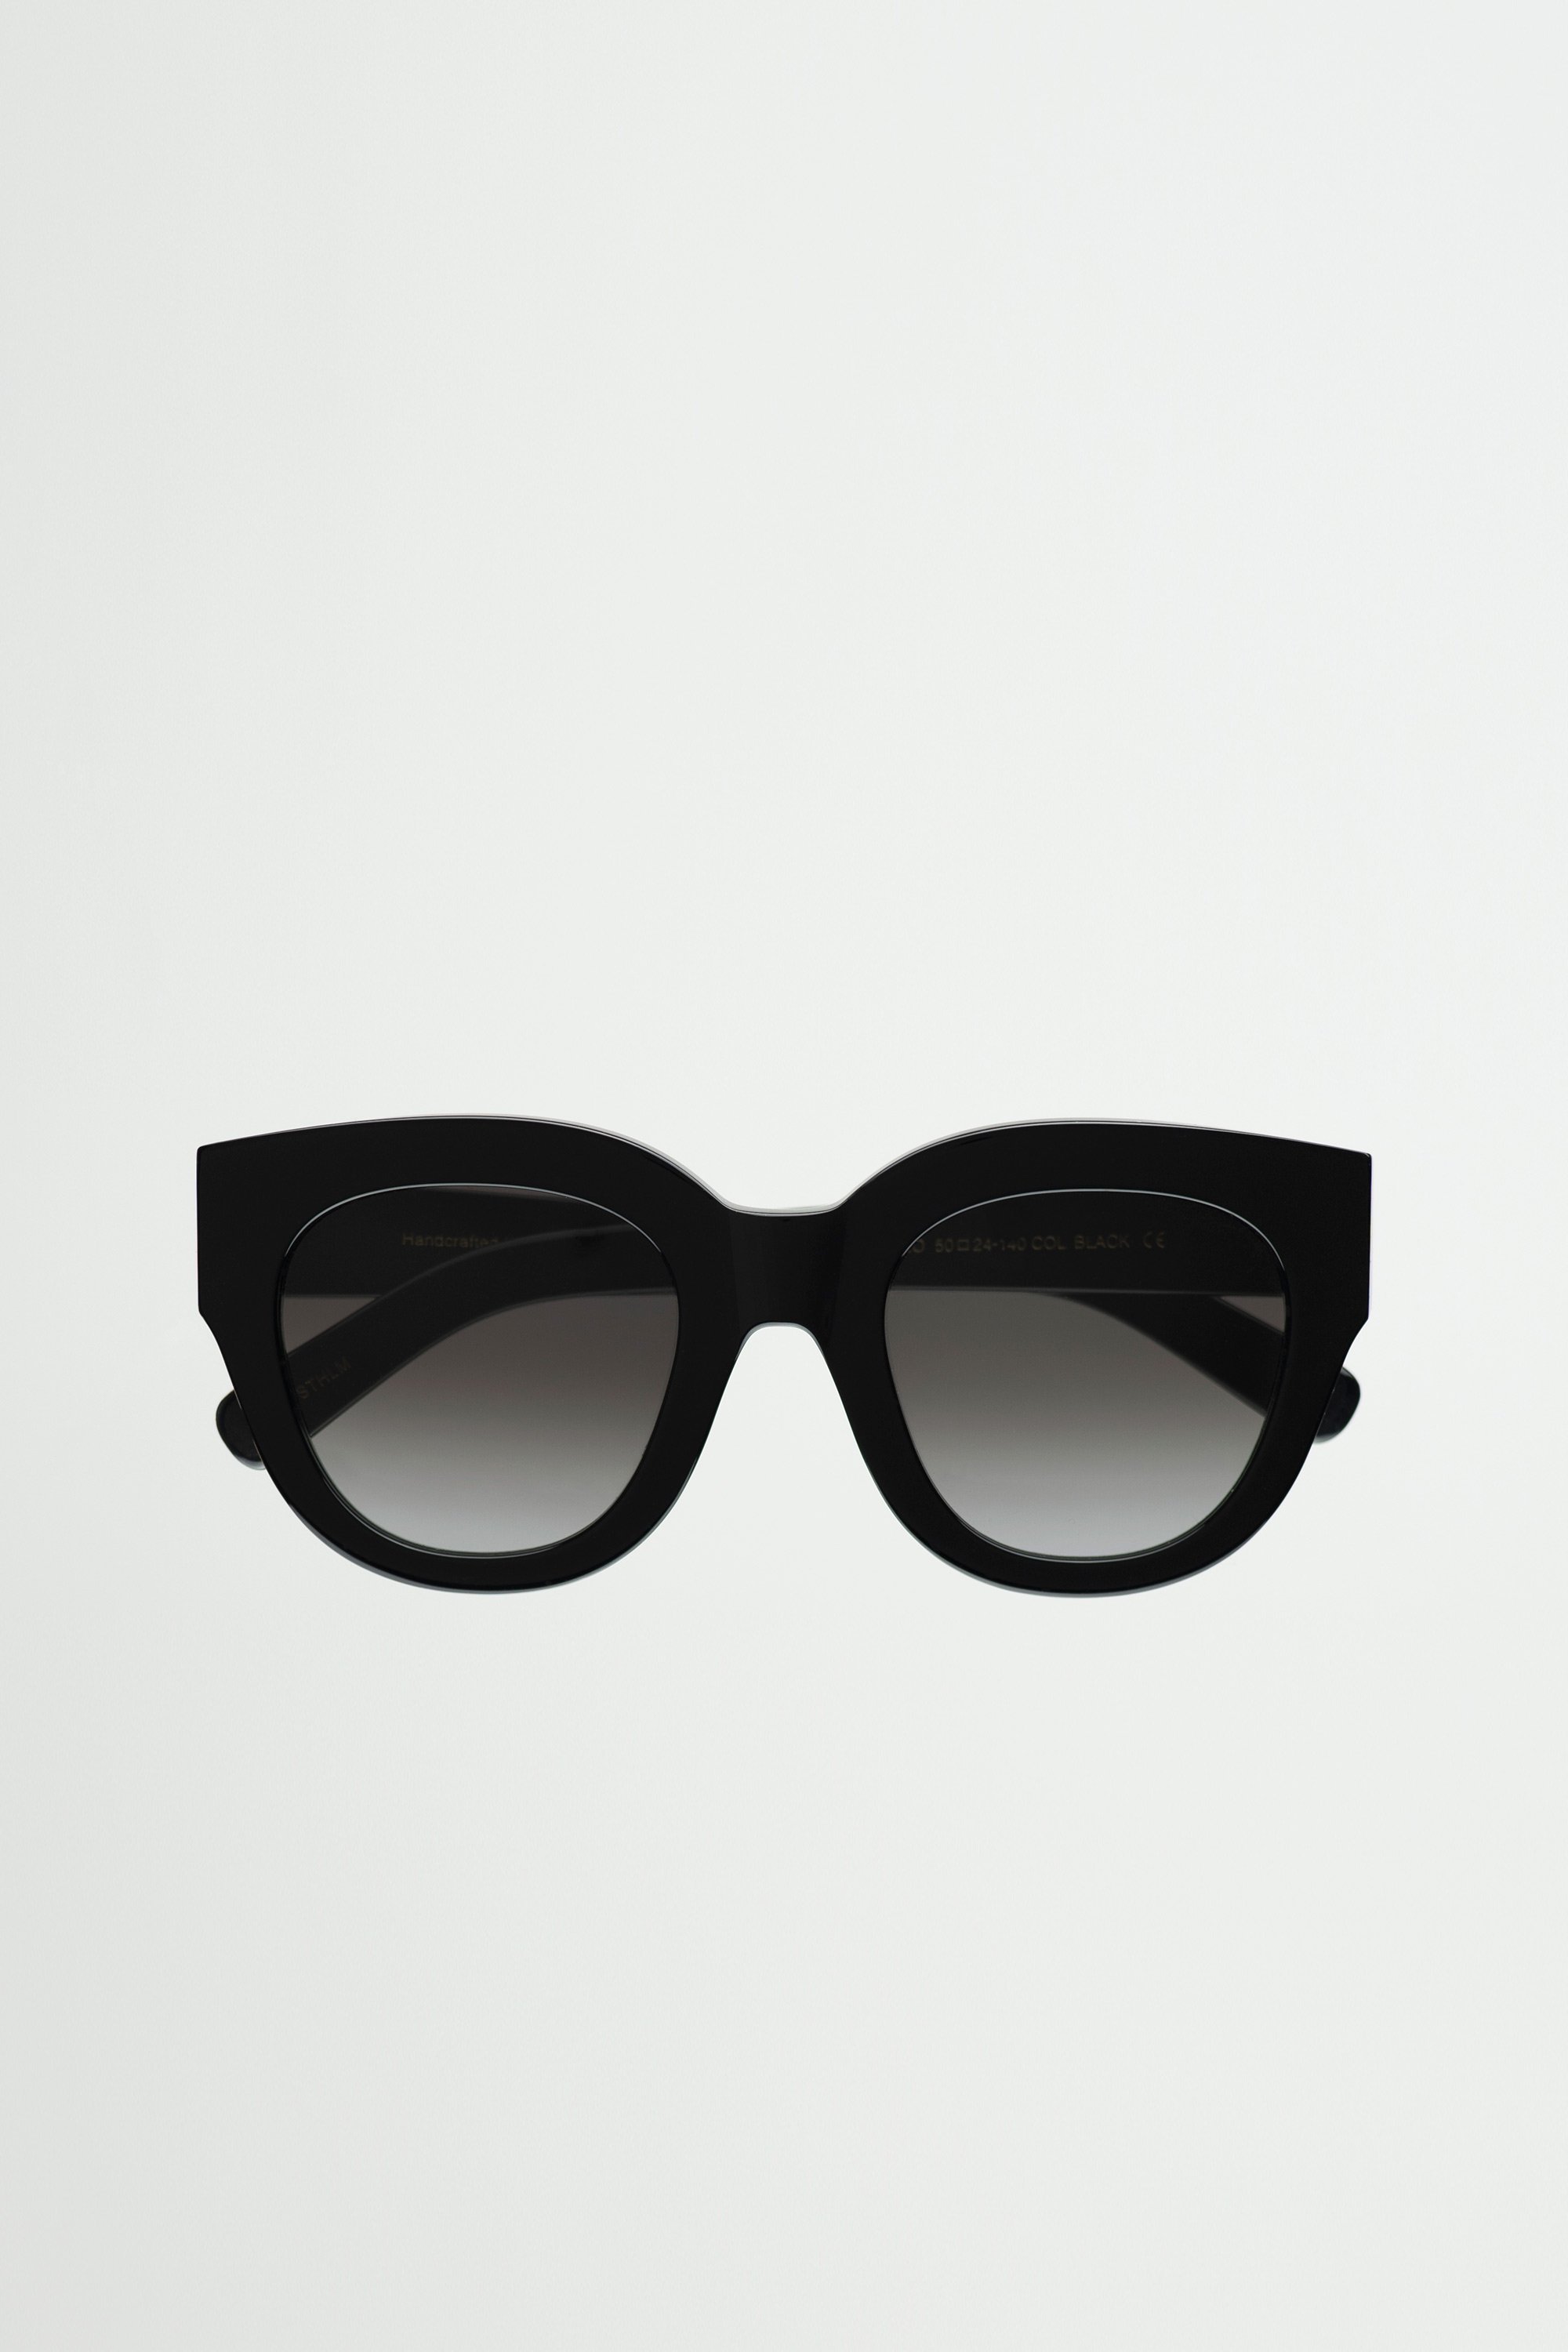 Monokel Eyewear Cleo ファッション用グラス サステナブル スウェーデン モノケルアイウェア ファッション雑貨 サングラス ブラック【送料無料】